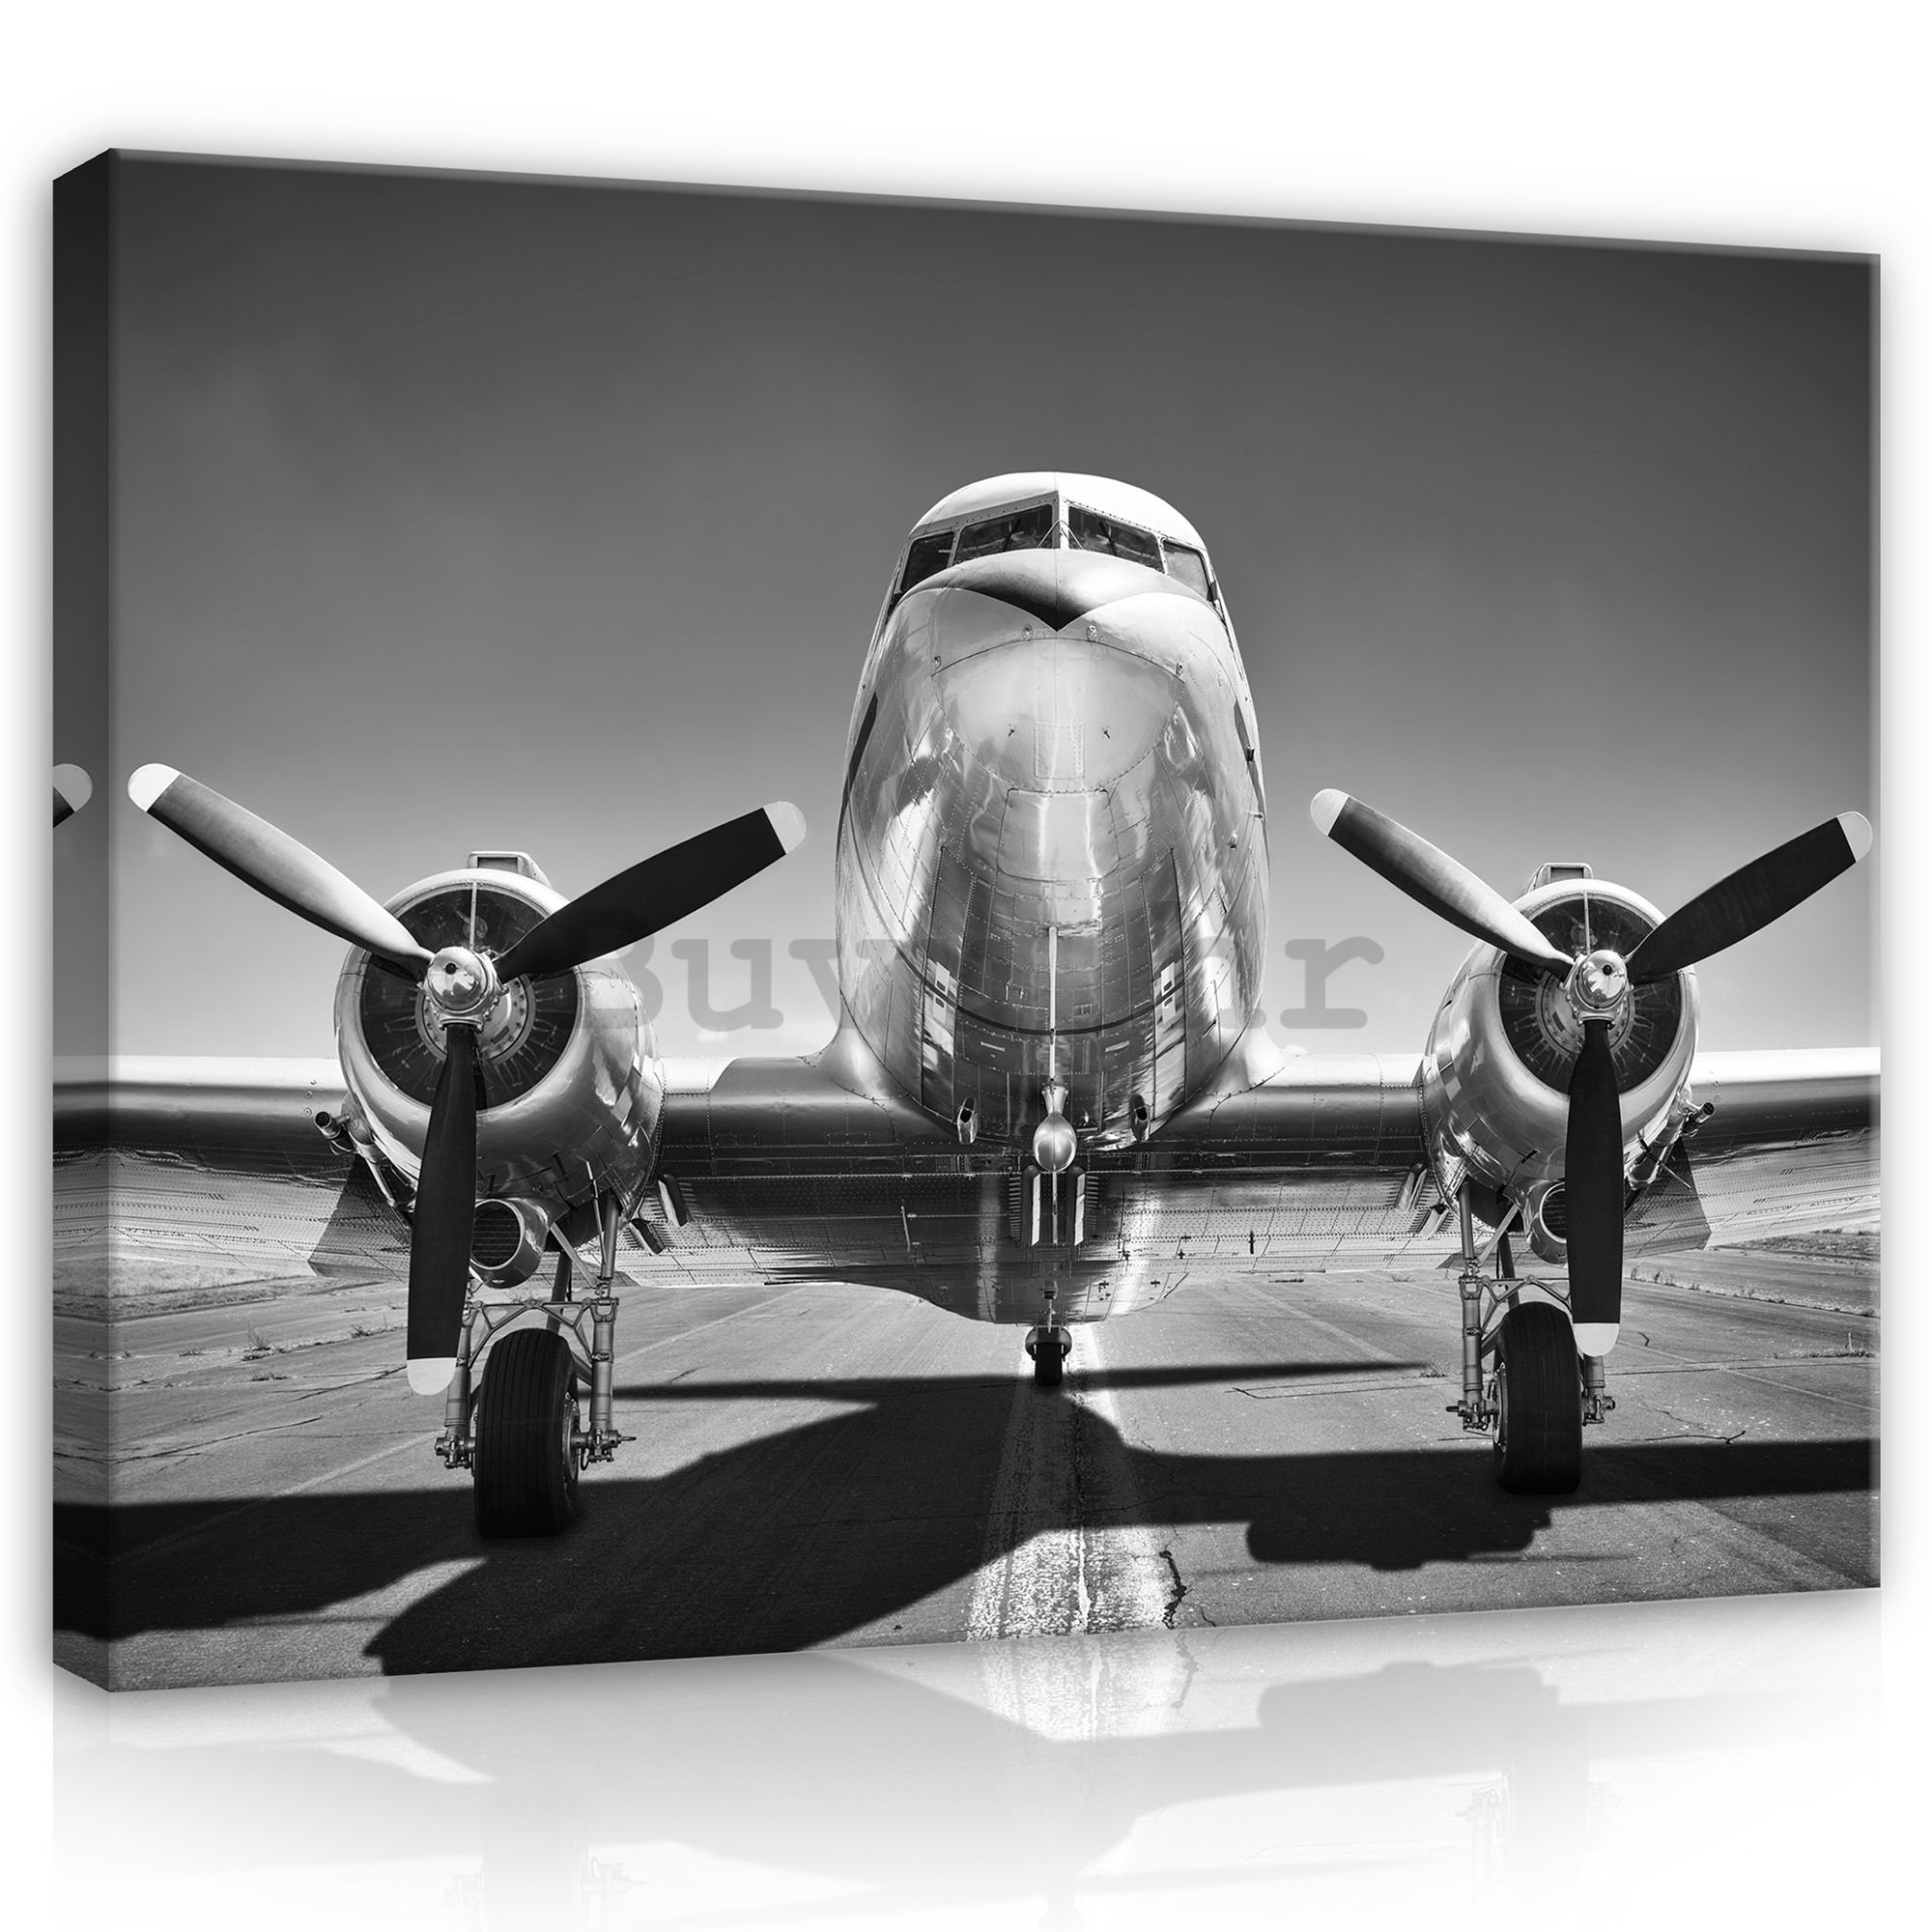 Slika na platnu: Crno-bijeli zrakoplovi (1) - 75x100 cm